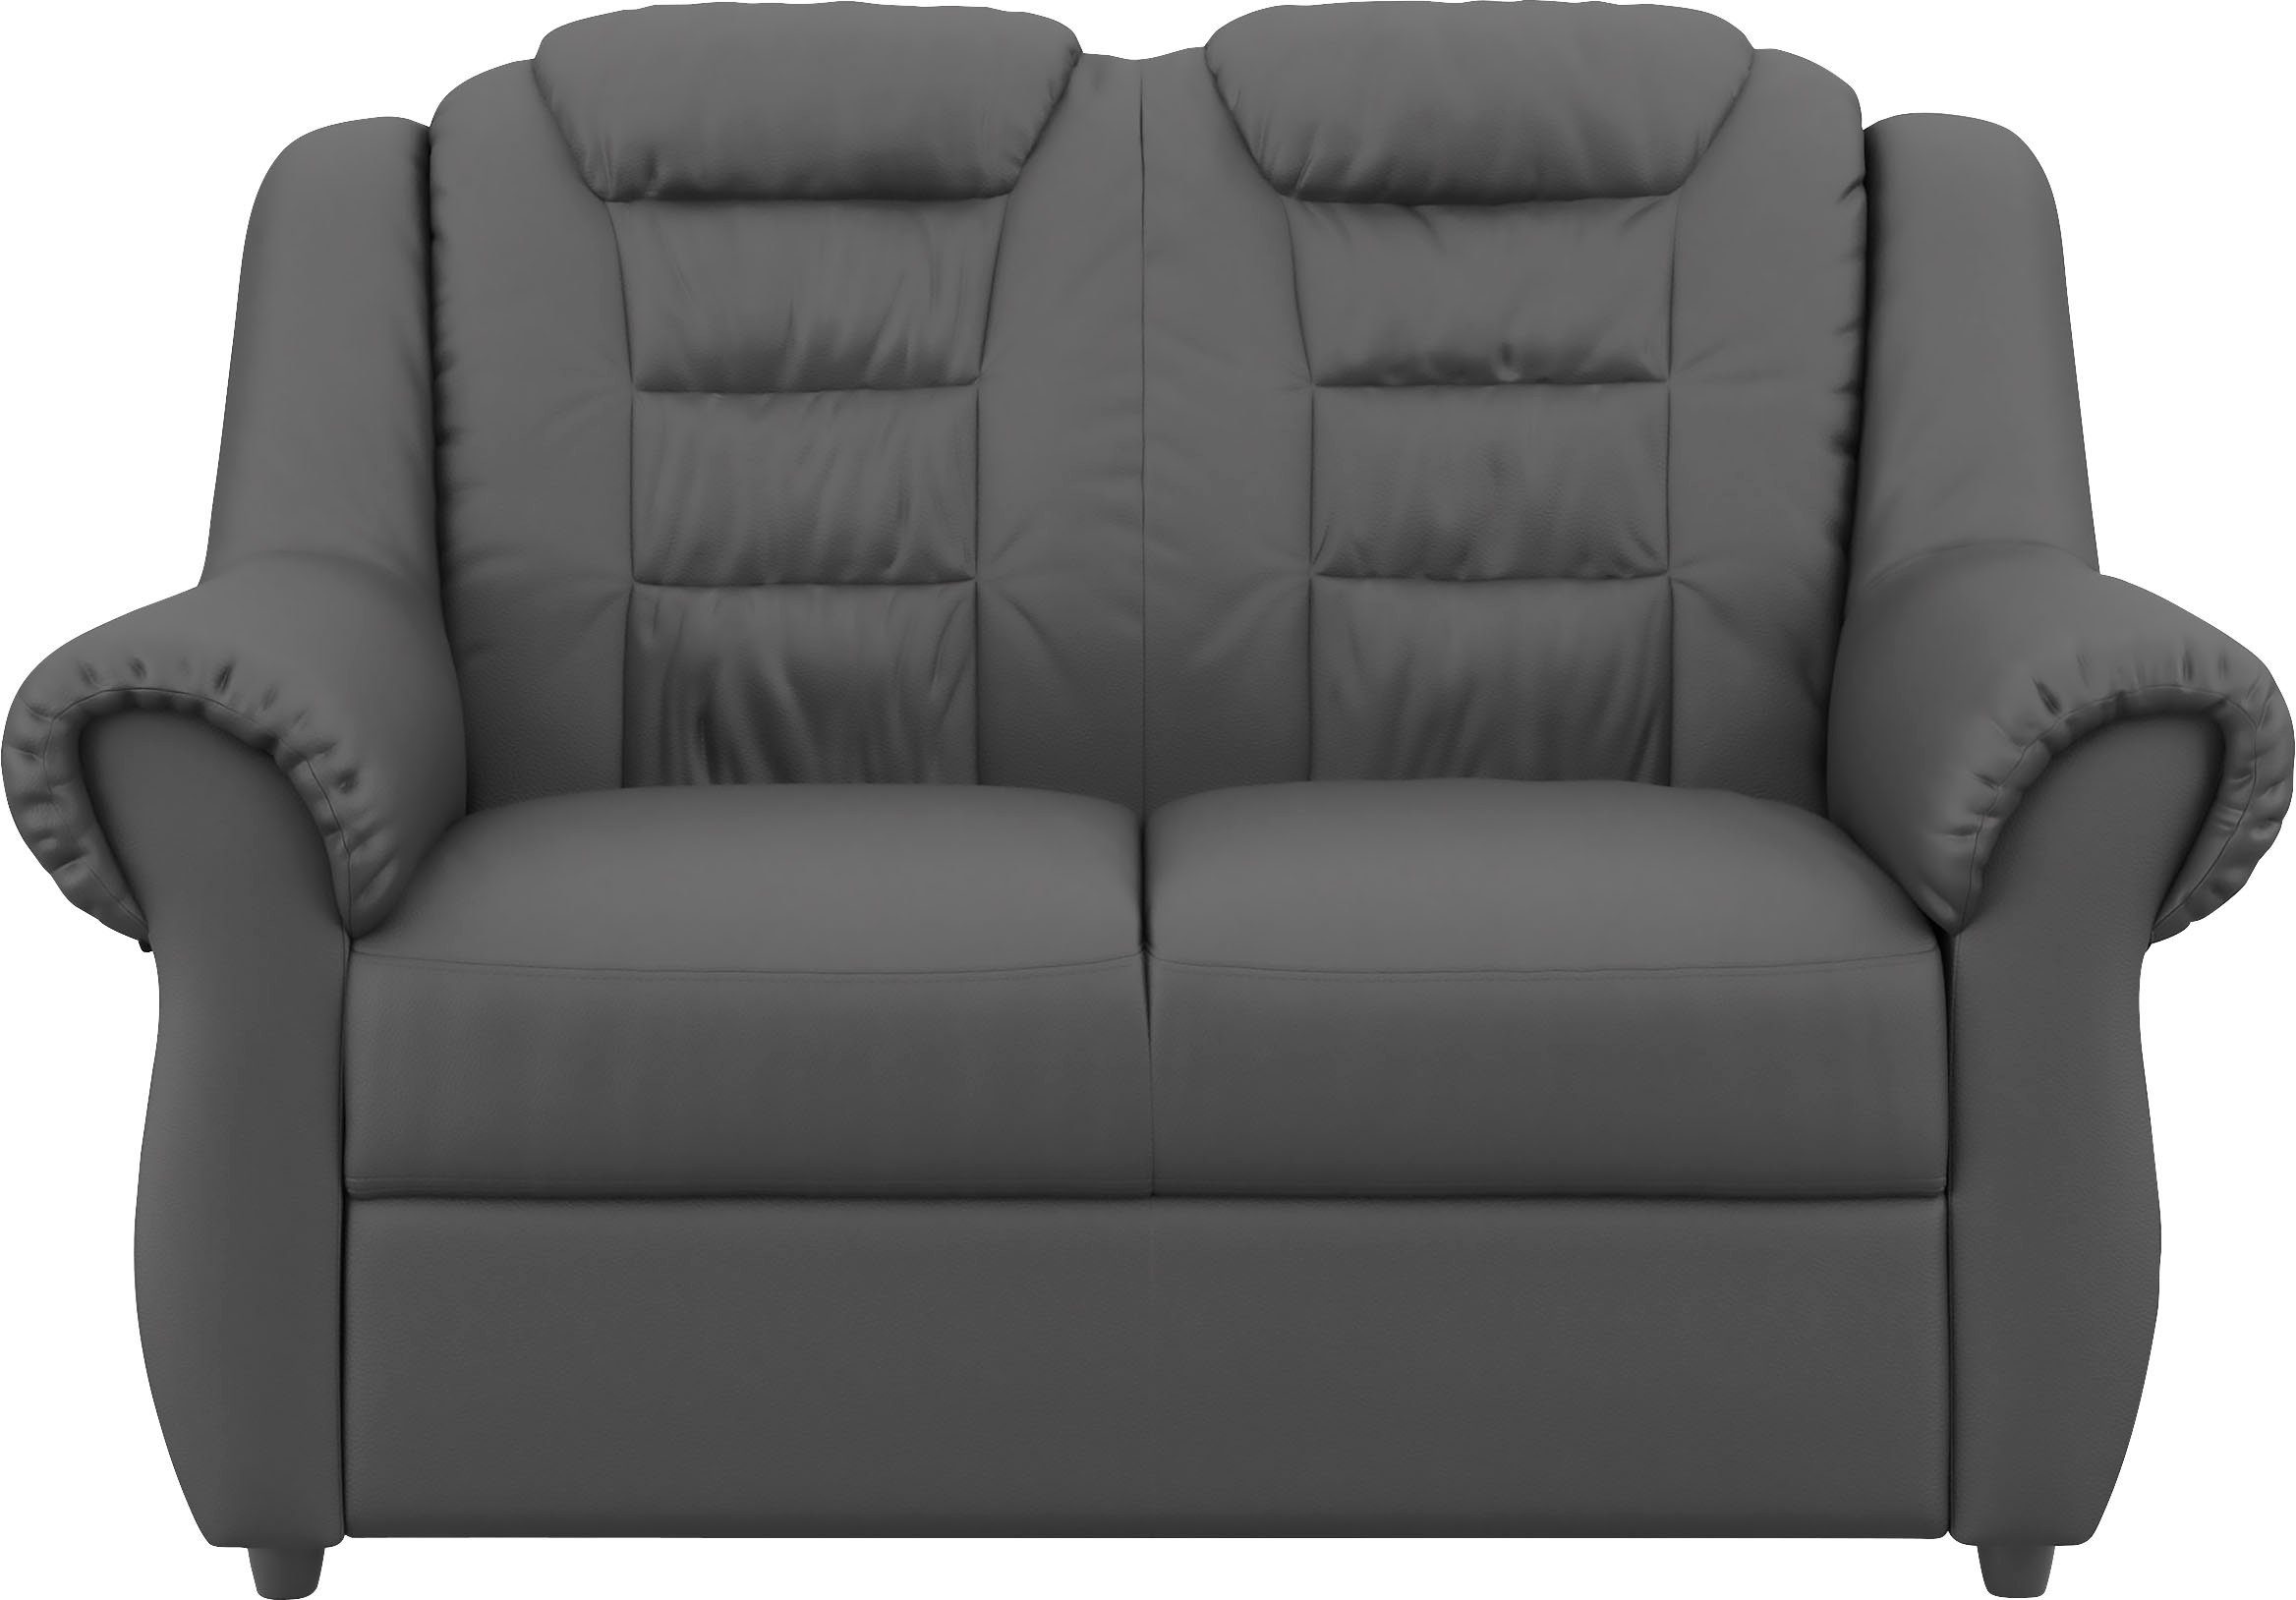 Home affaire 2-Sitzer Boston, Gemütlicher 2-Sitzer mit hoher Rückenlehne in klassischem Design